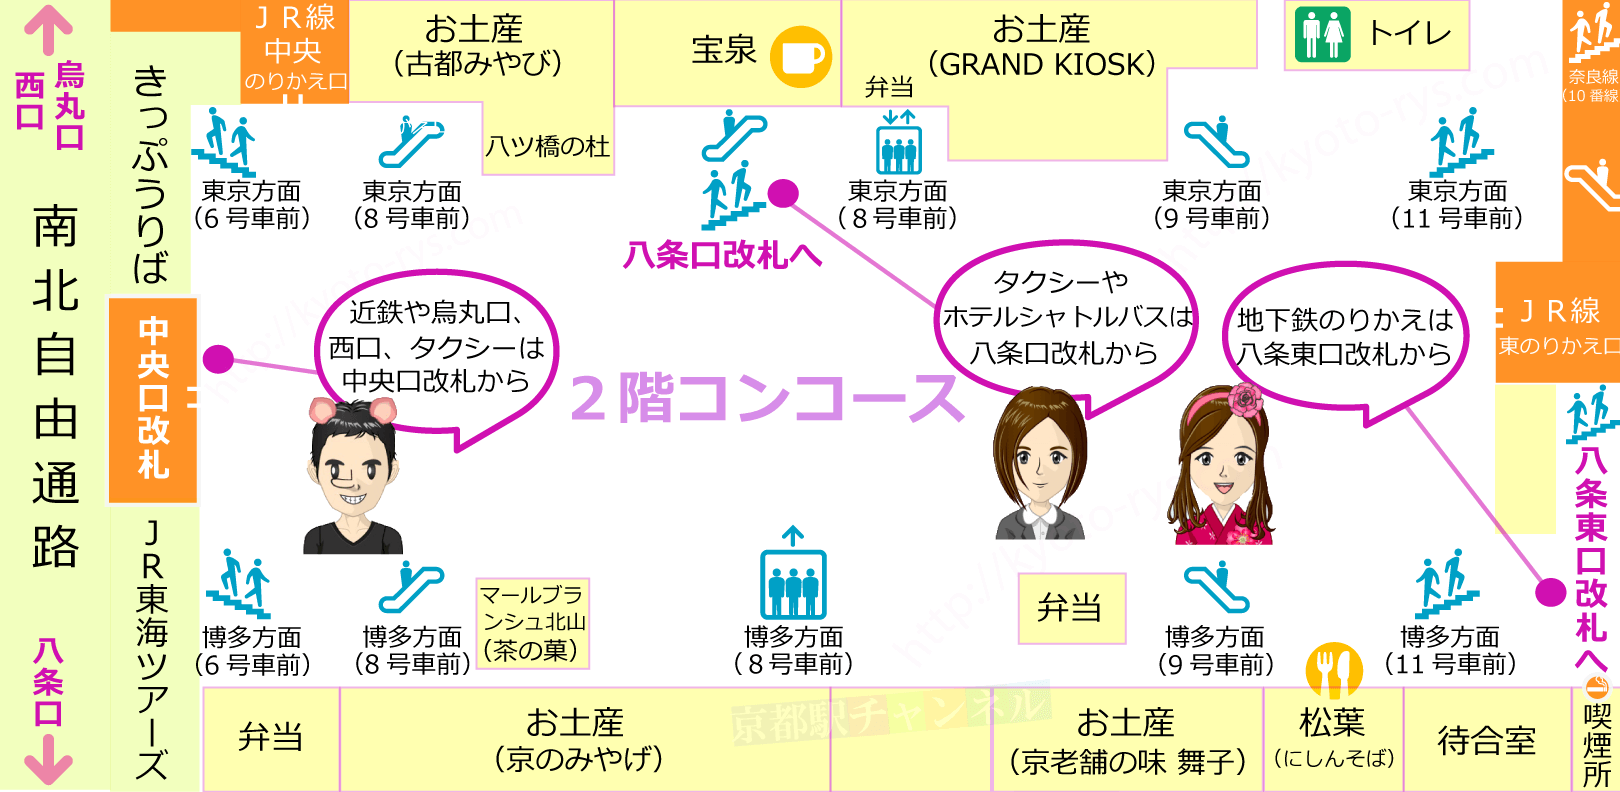 新幹線京都駅のコンコースの構内図